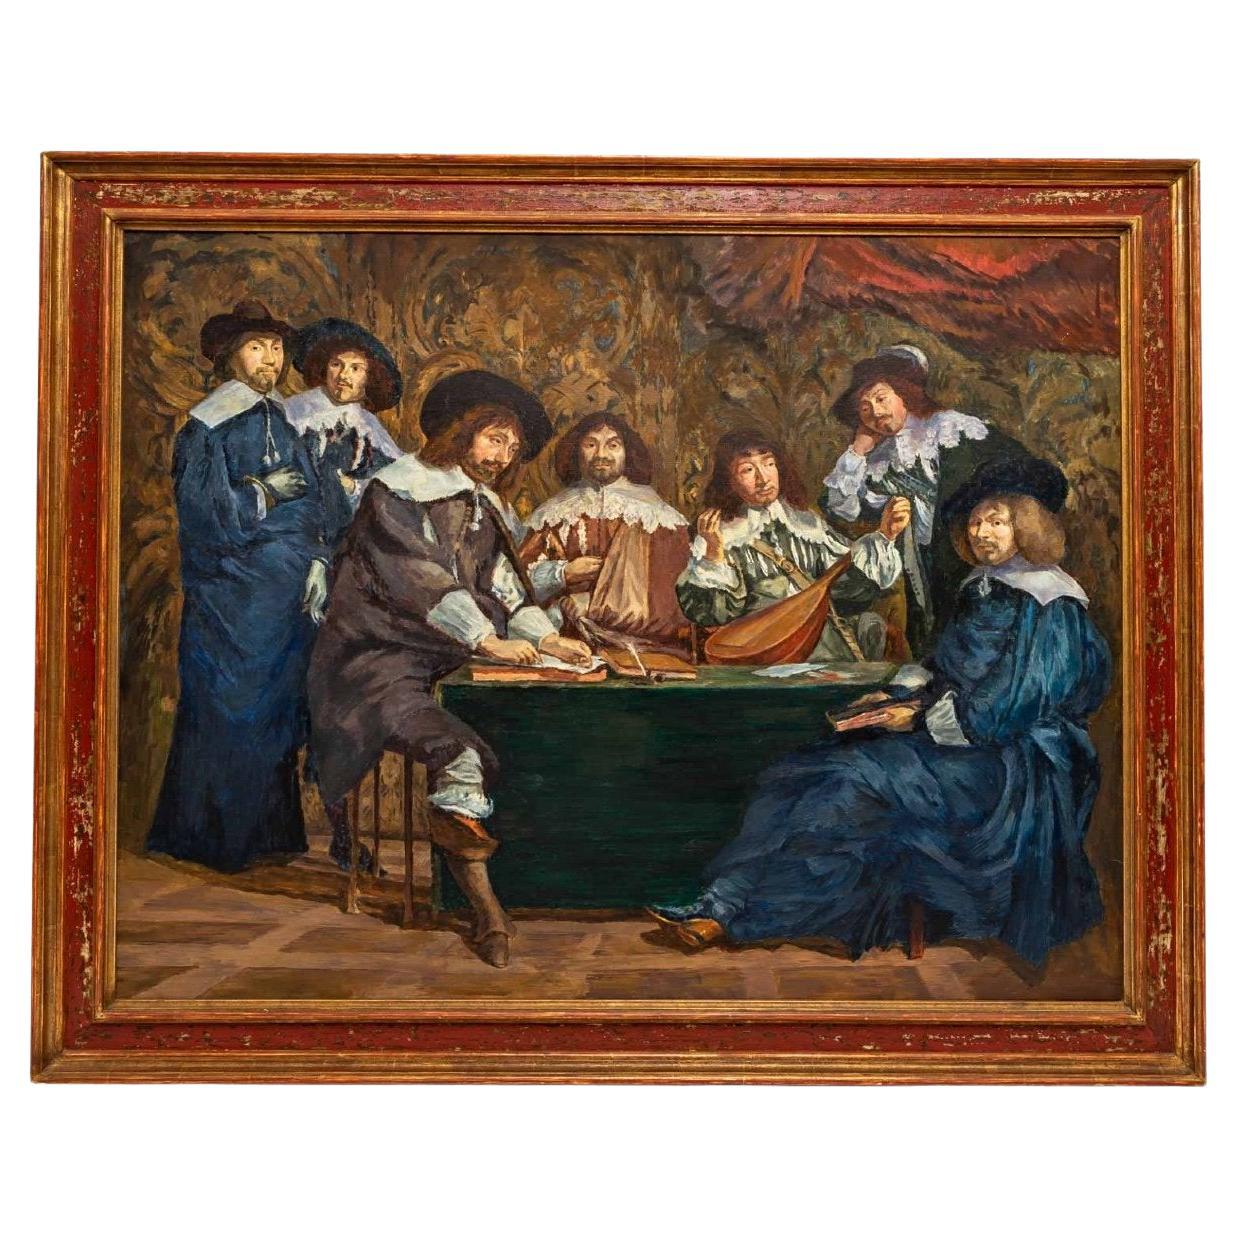 Grande huile sur toile - L'Académie - réalisation du XIXe siècle